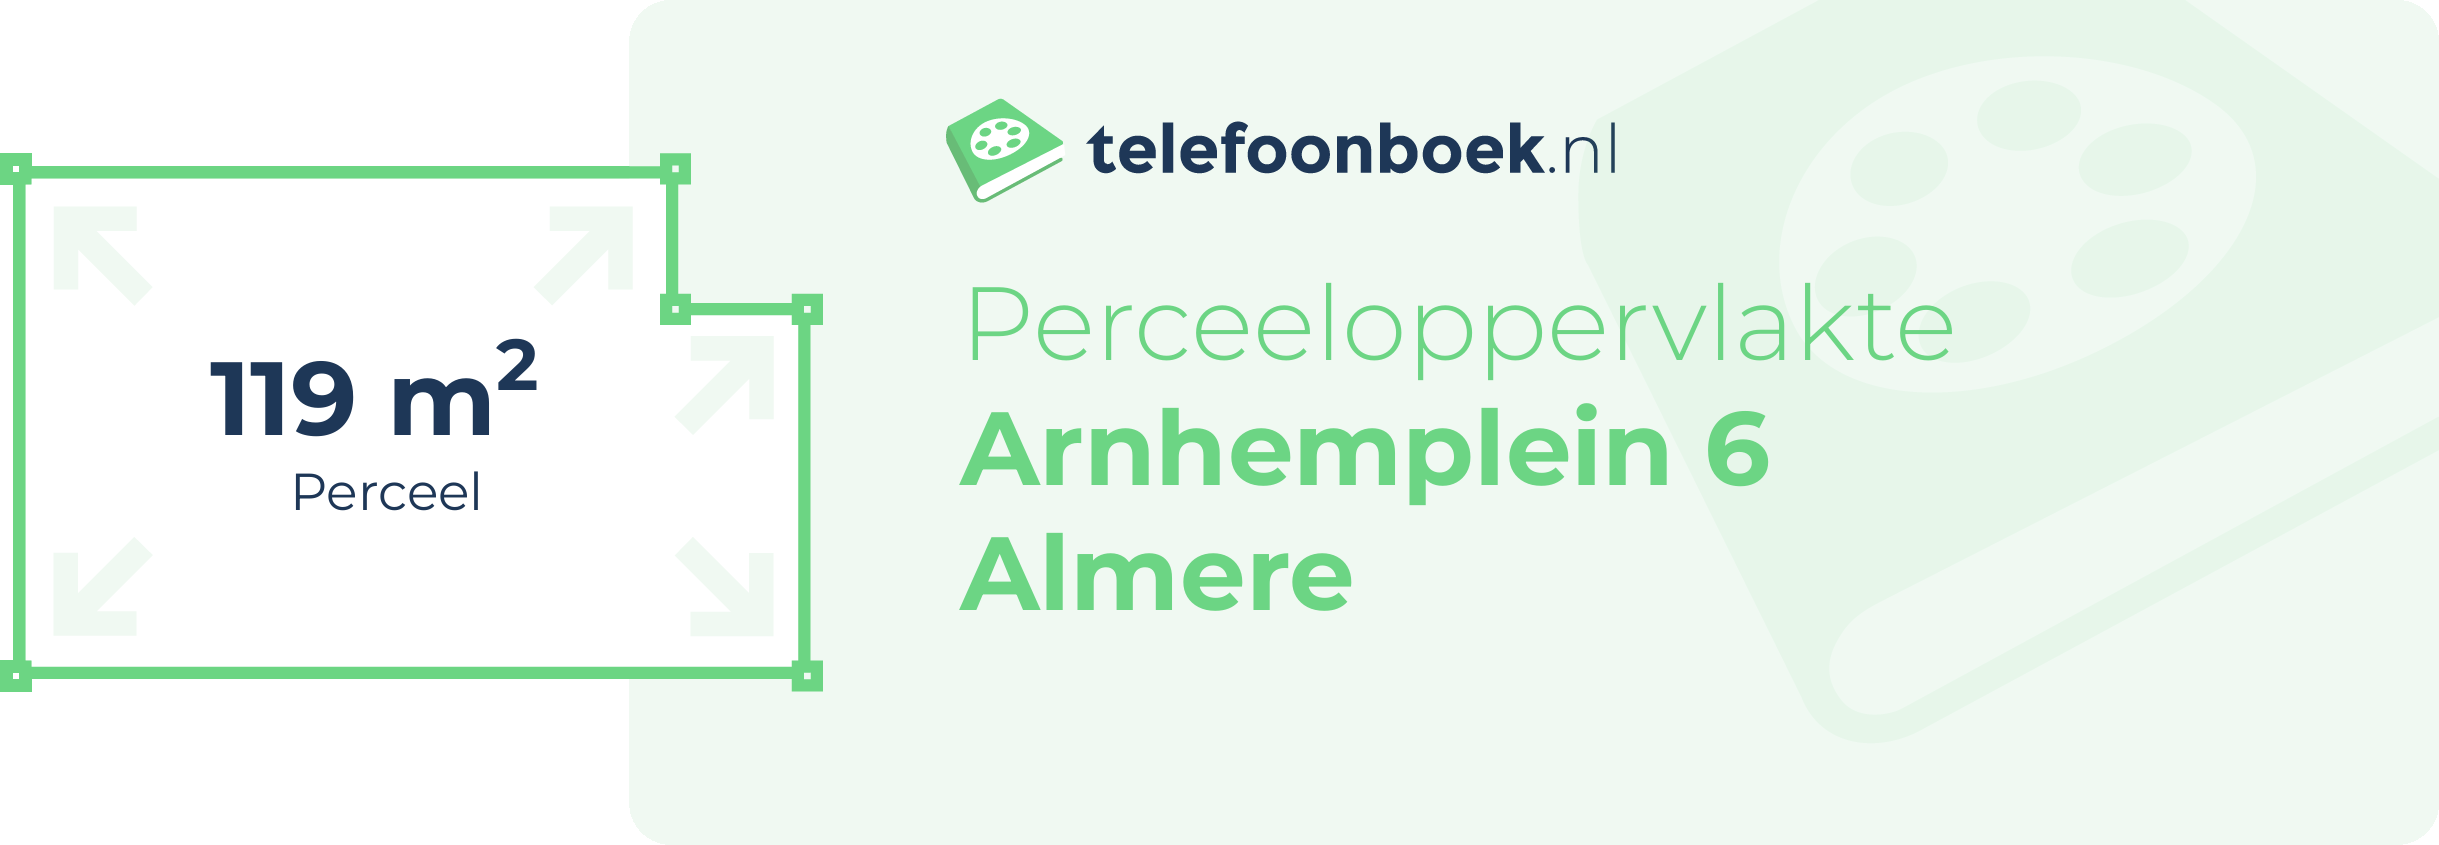 Perceeloppervlakte Arnhemplein 6 Almere